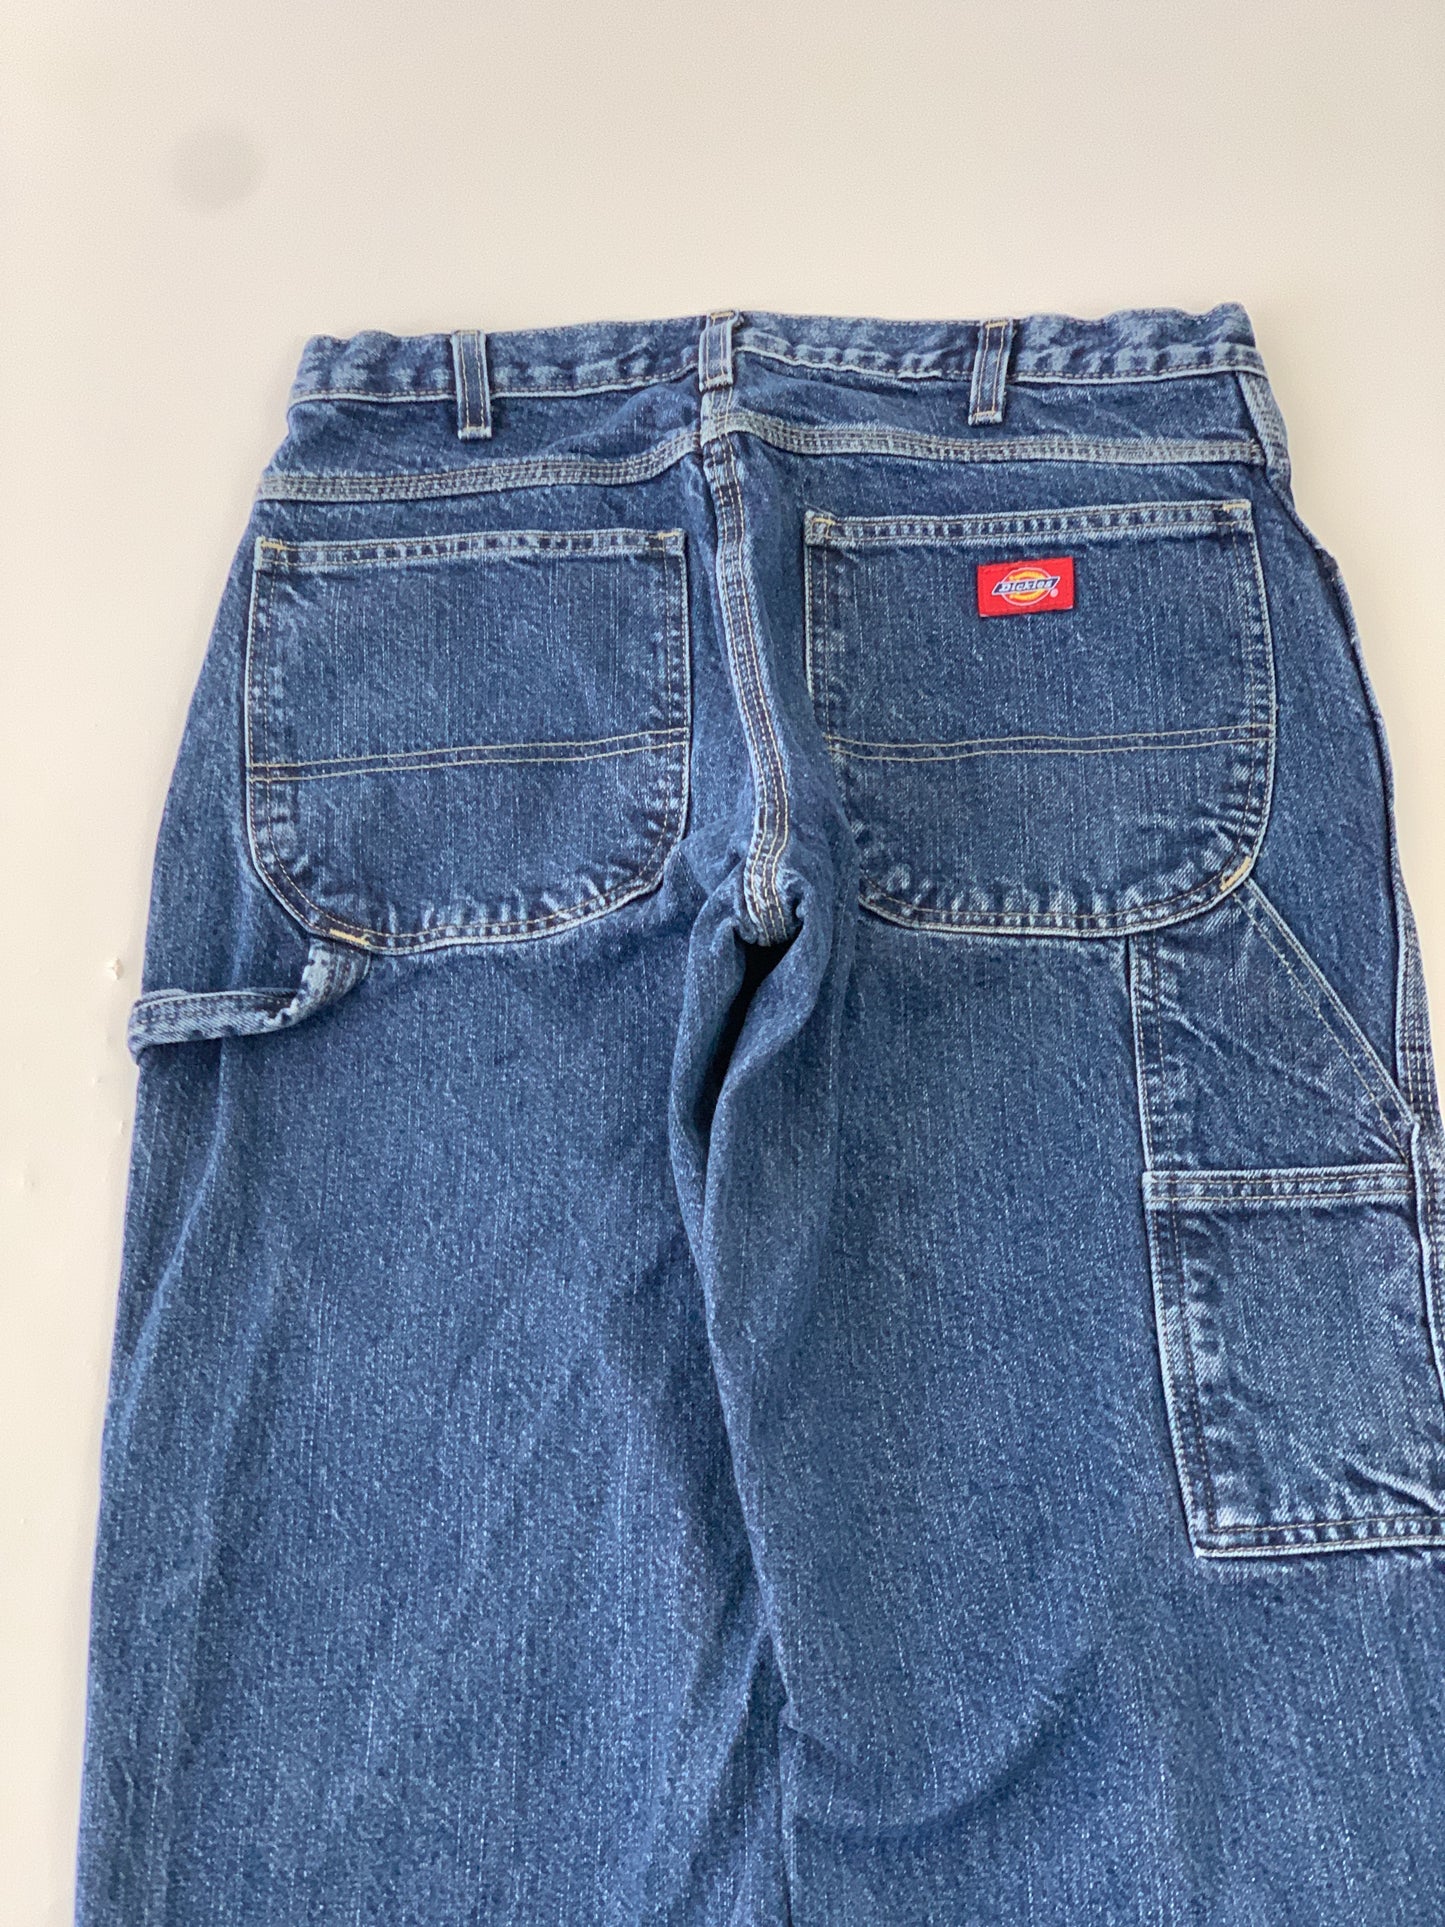 Dickies Carpenter Vintage Jeans - 32